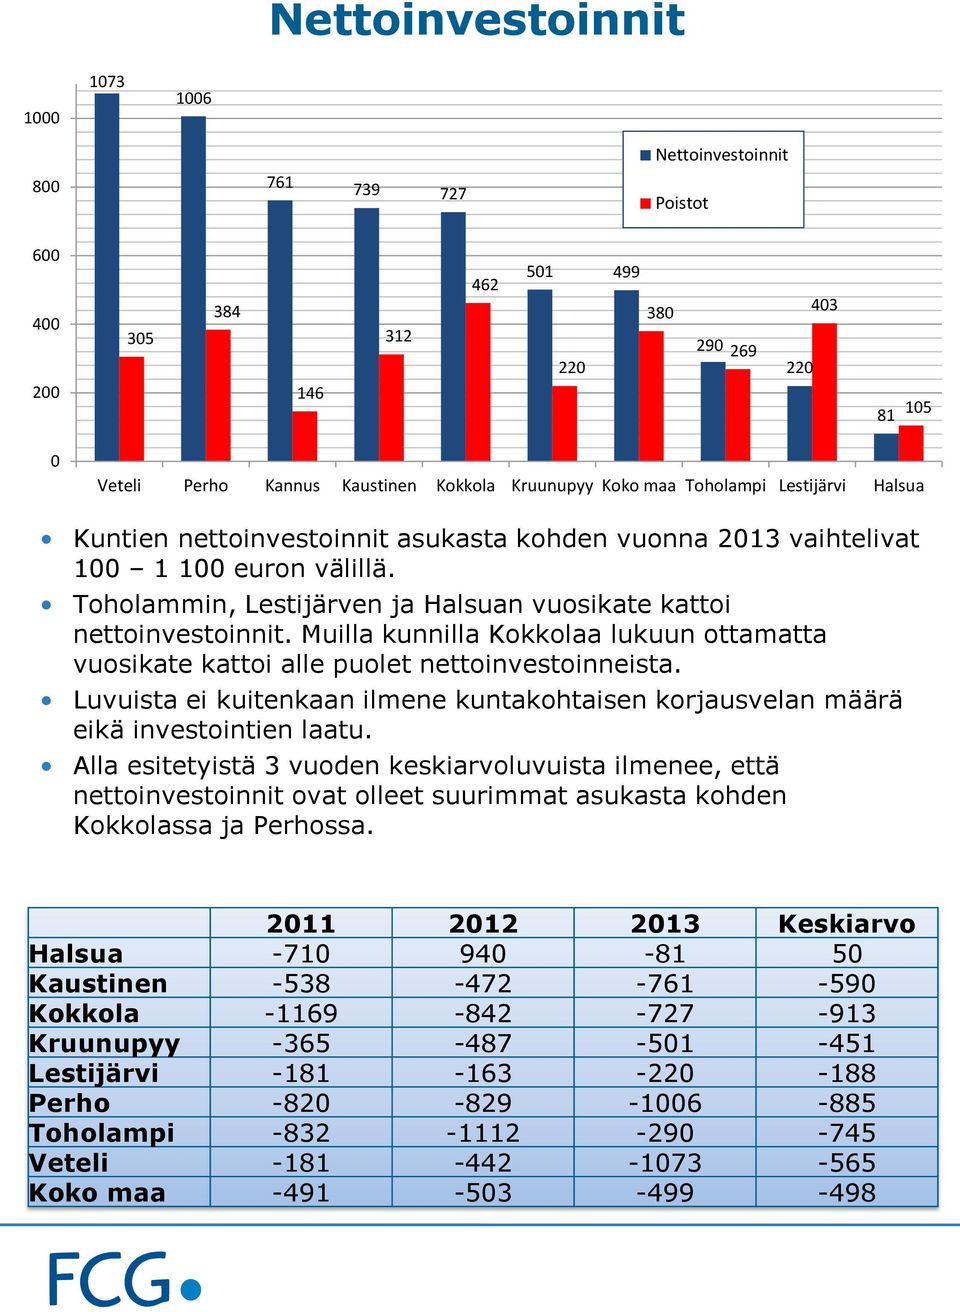 Muilla kunnilla Kokkolaa lukuun ottamatta vuosikate kattoi alle puolet nettoinvestoinneista. Luvuista ei kuitenkaan ilmene kuntakohtaisen korjausvelan määrä eikä investointien laatu.